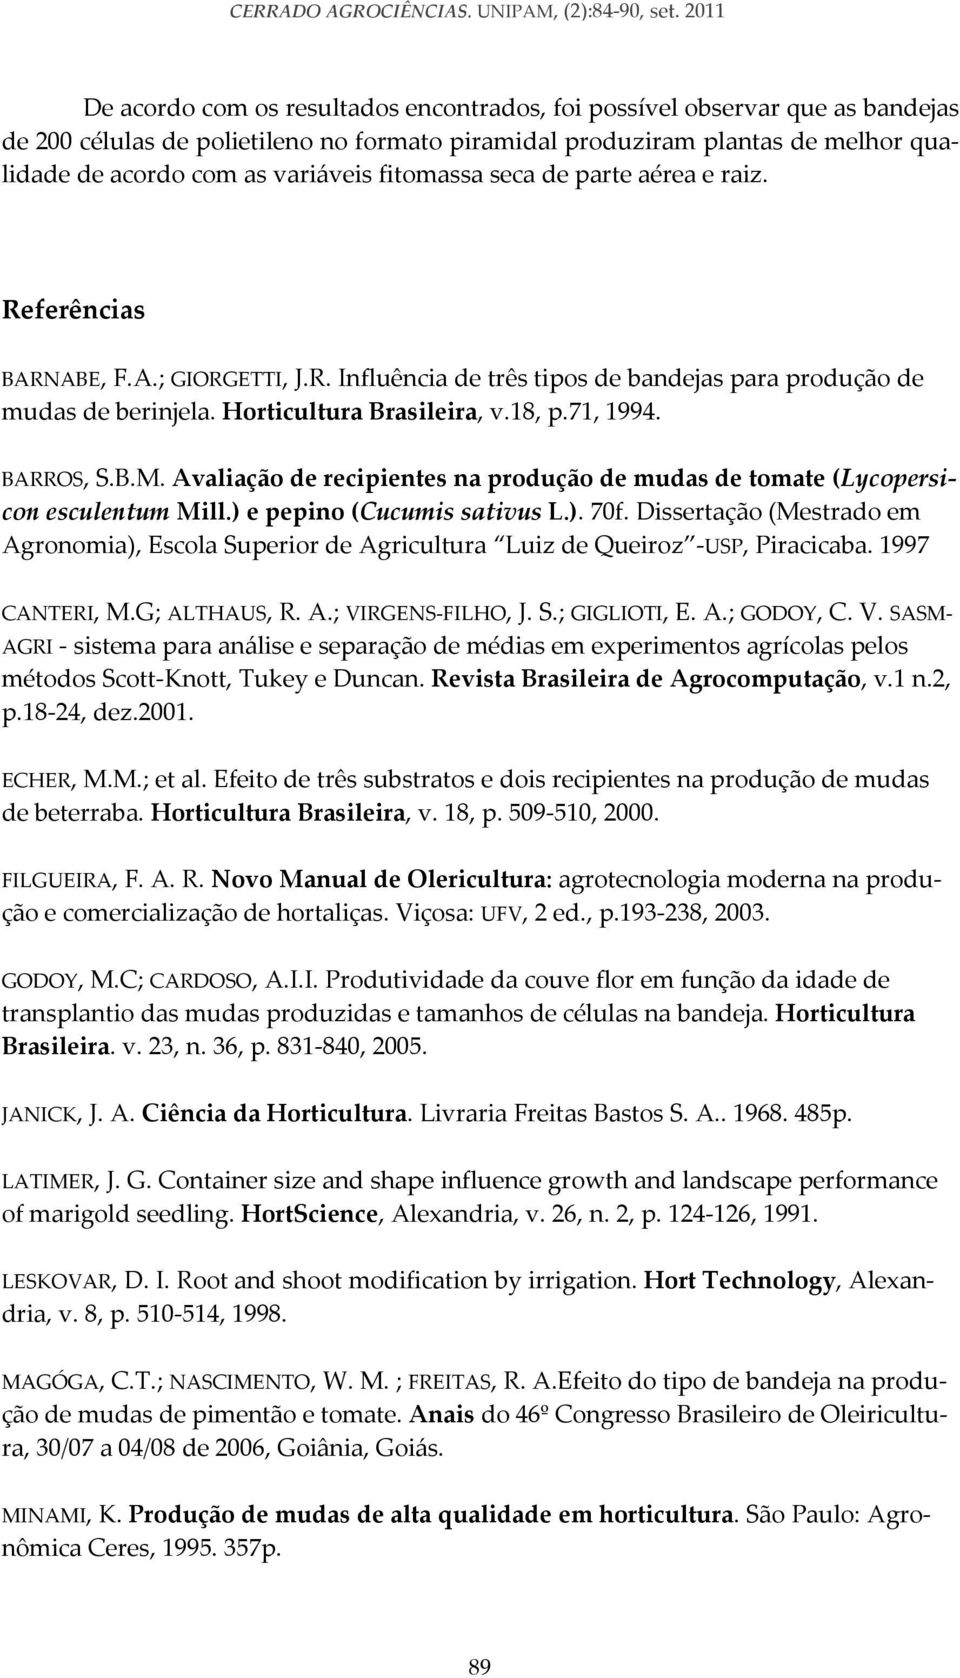 variáveis fitomassa seca de parte aérea e raiz. Referências BARNABE, F.A.; GIORGETTI, J.R. Influência de três tipos de bandejas para produção de mudas de berinjela. Horticultura Brasileira, v.18, p.